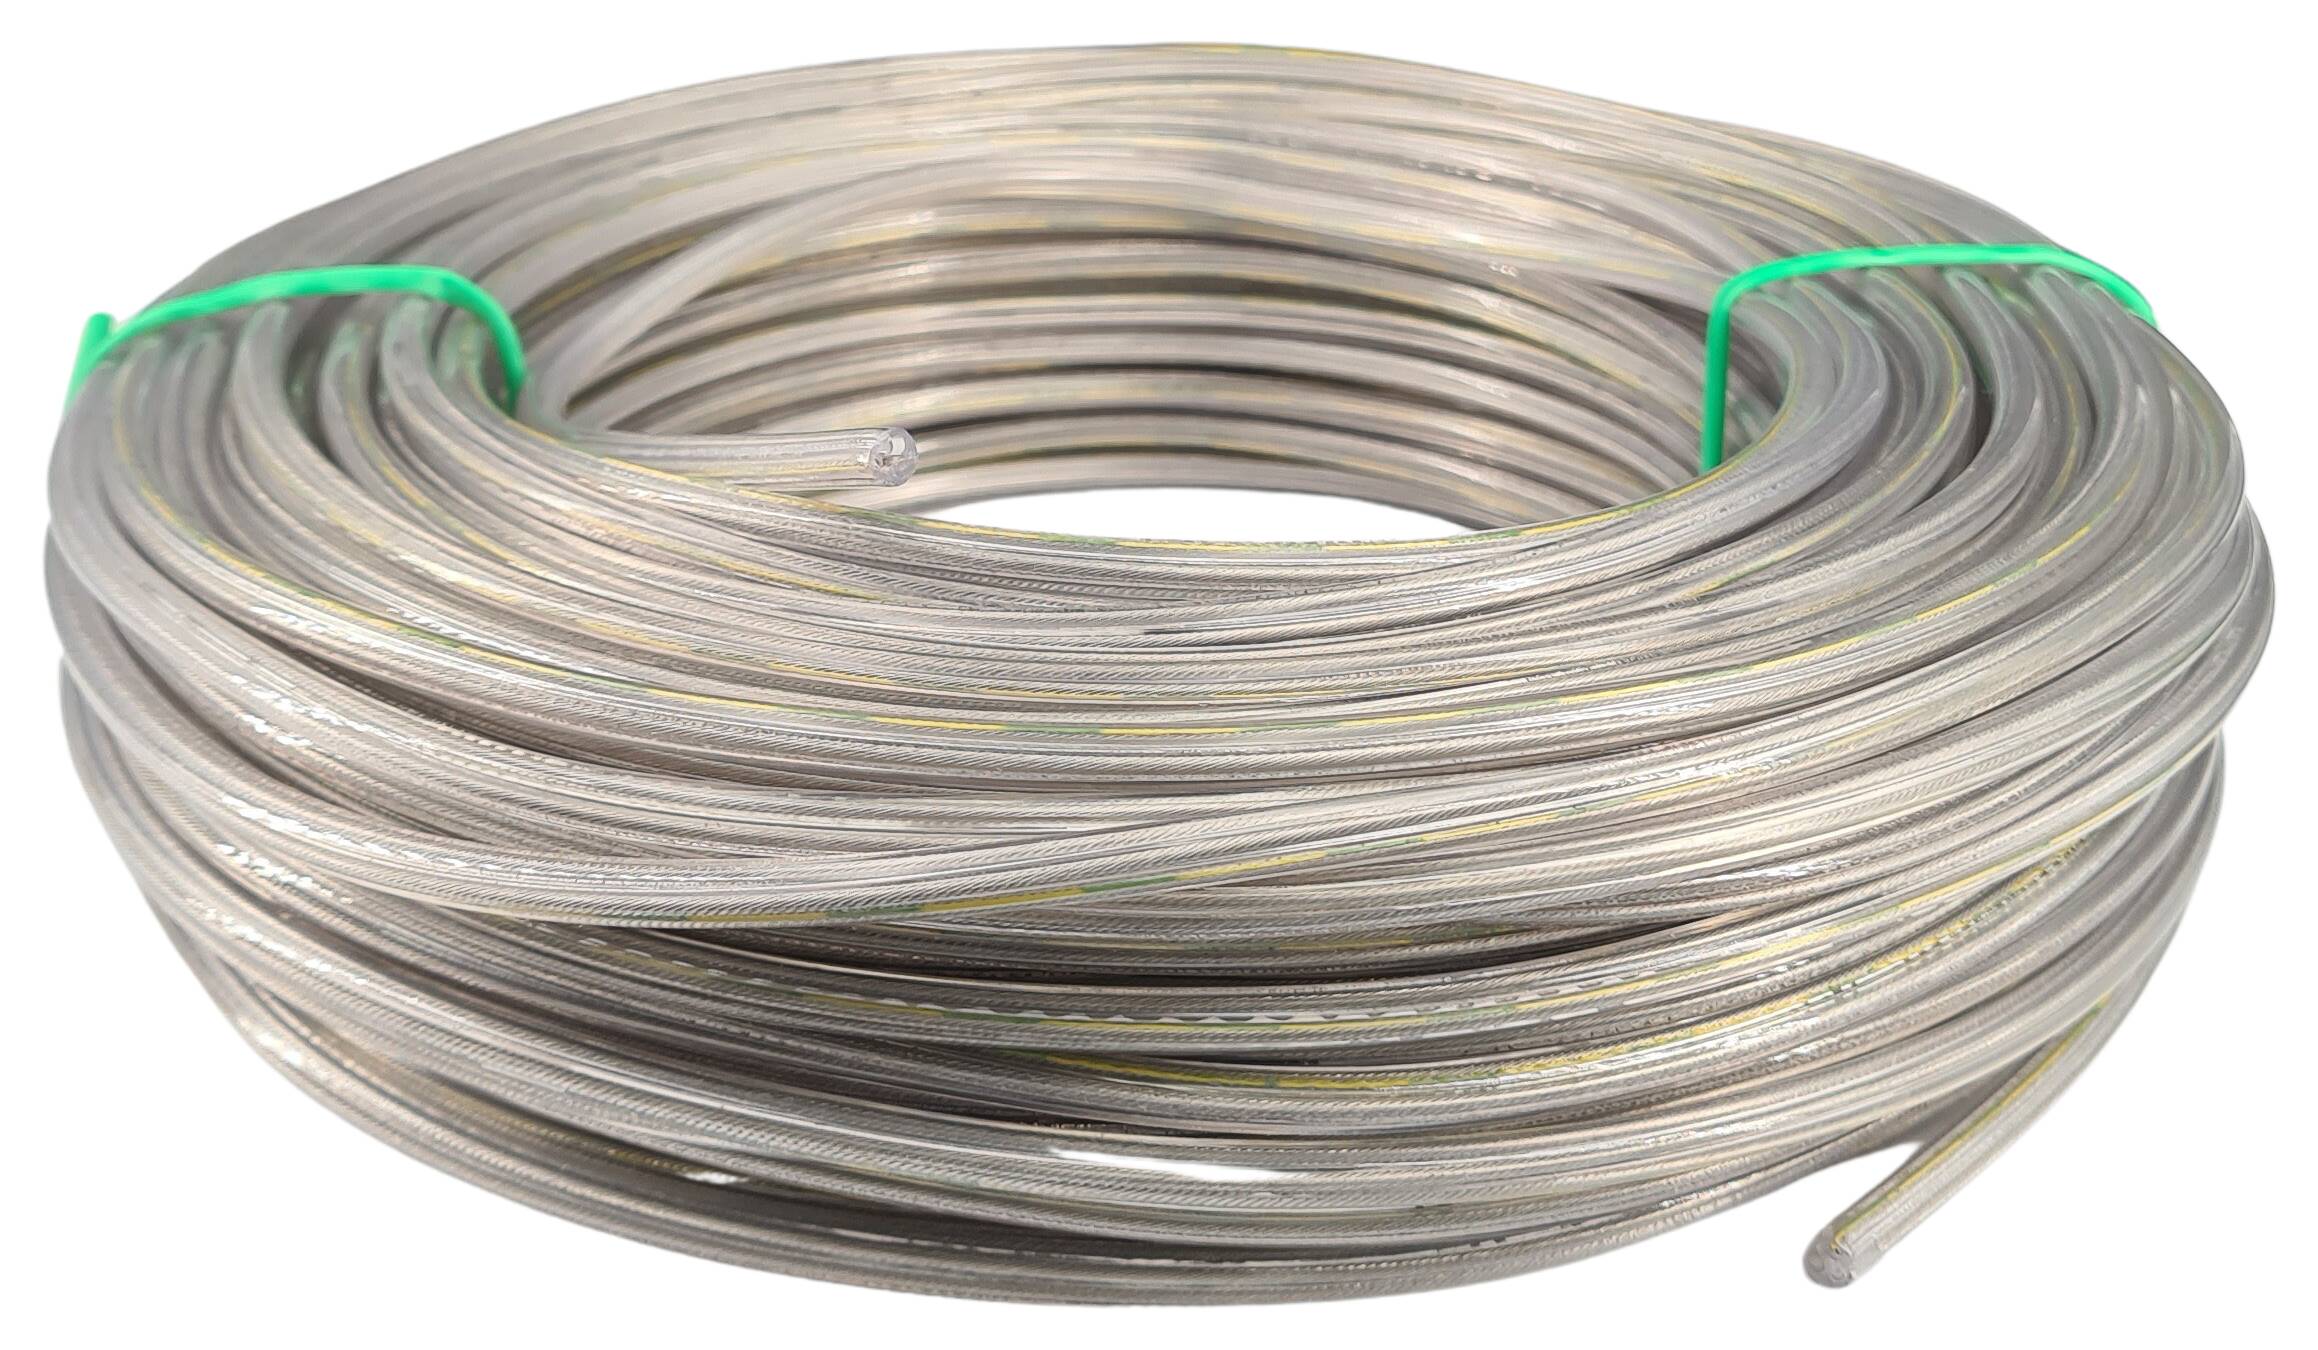 Kabel 3x0,75 rund PVC/PVC 500 mtr. Spule transparent